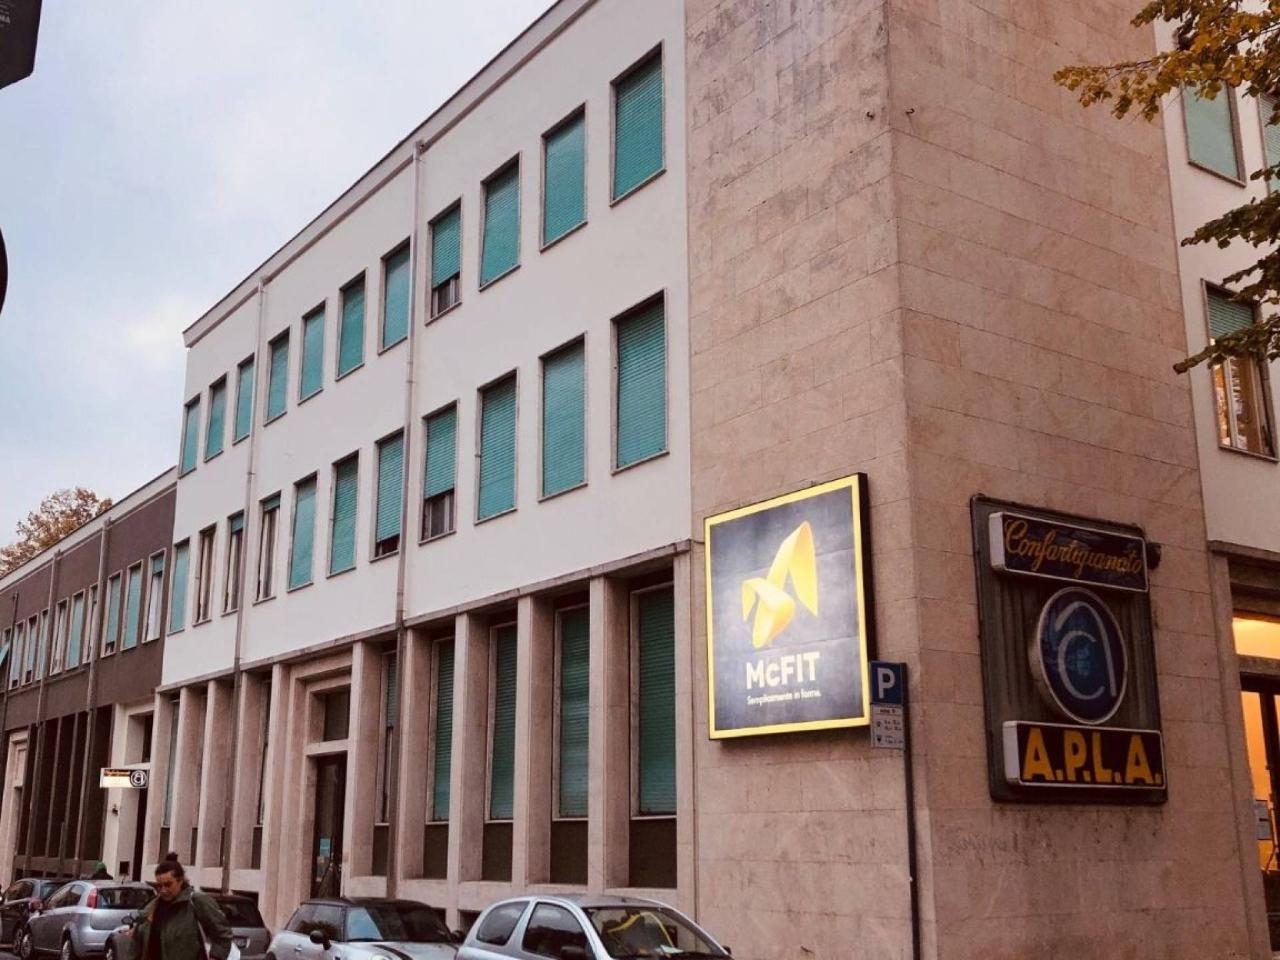 Ufficio condiviso in affitto a Parma